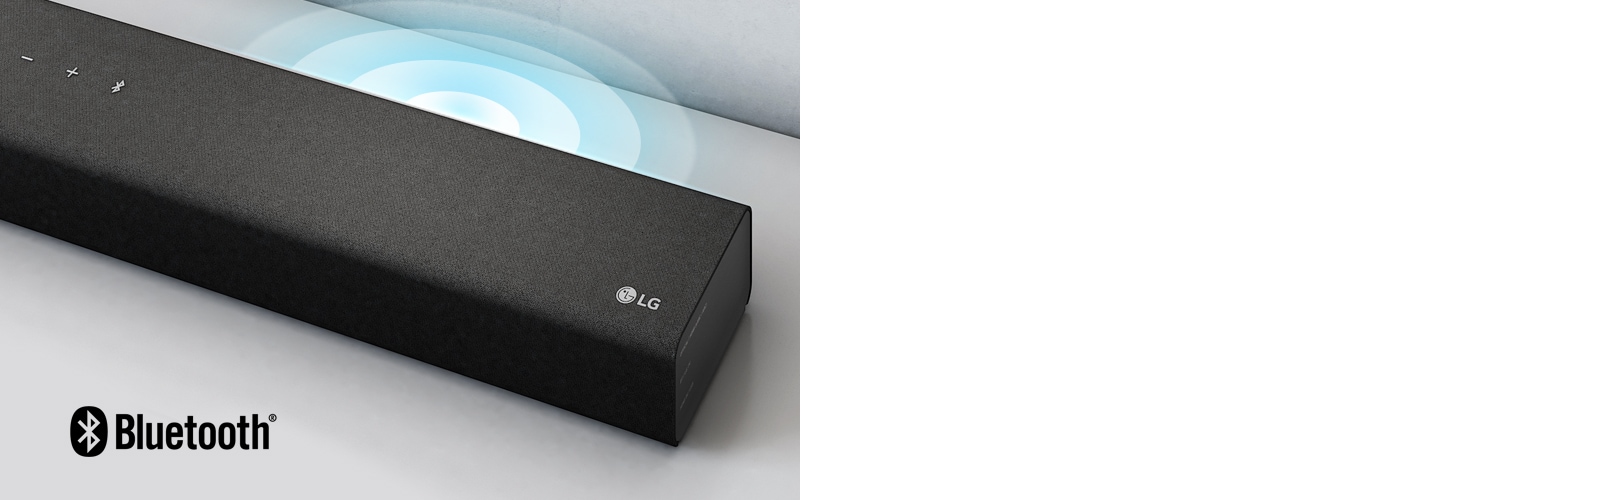 LG presenta nuevas barras de sonido: ultra delgadas y sin cables